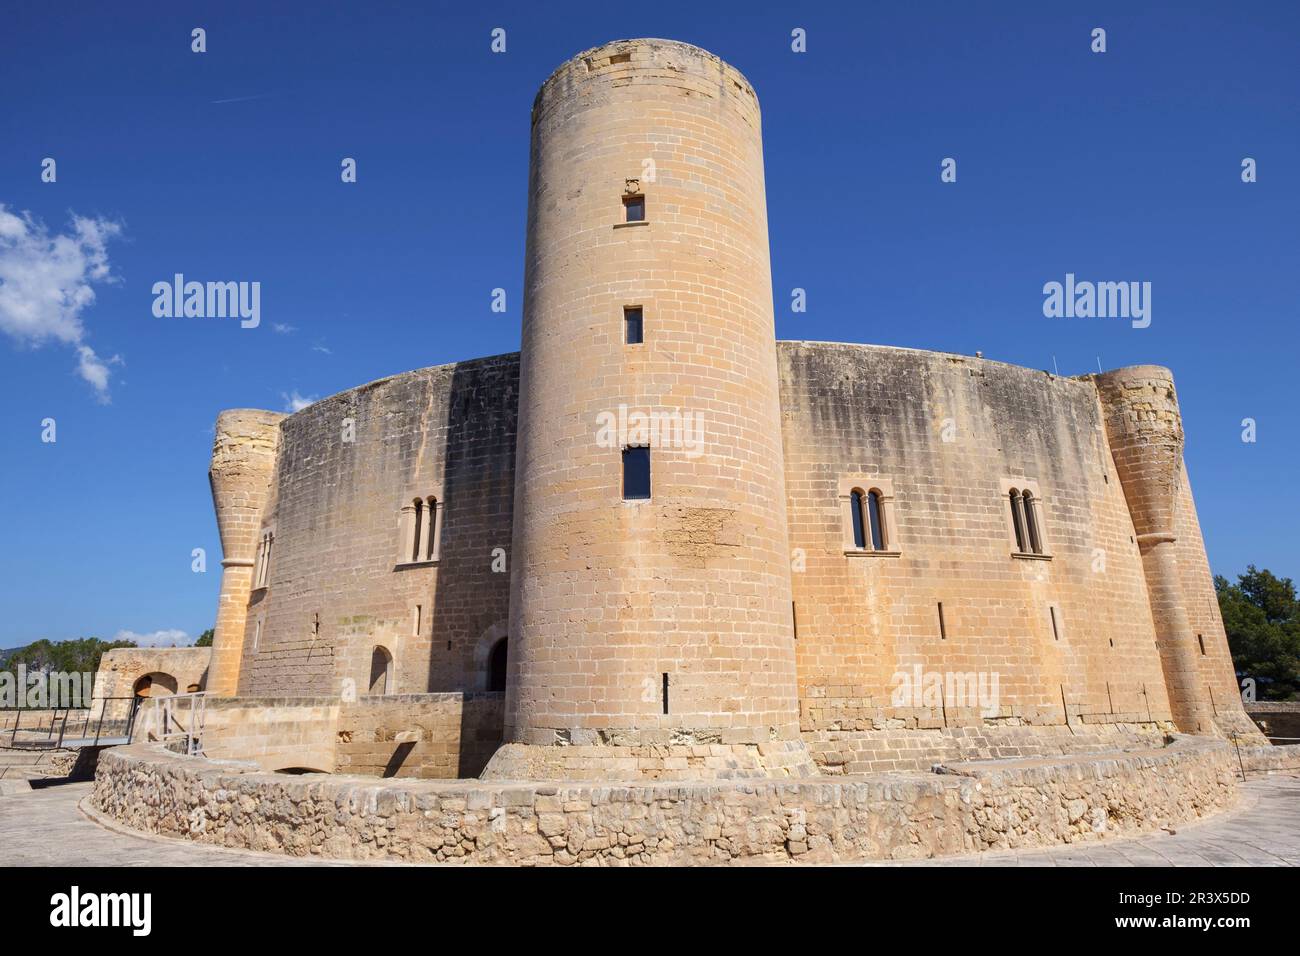 castillo de Bellver, siglo XIV, estilo gótico, Mallorca, balearic islands, Spain. Stock Photo